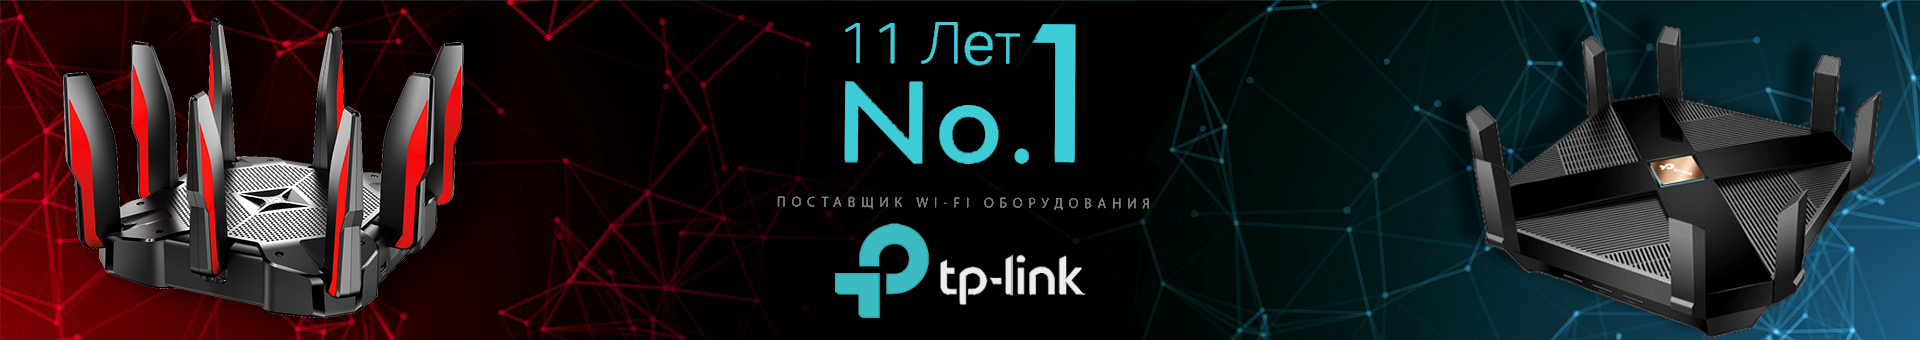 TP-Link-New